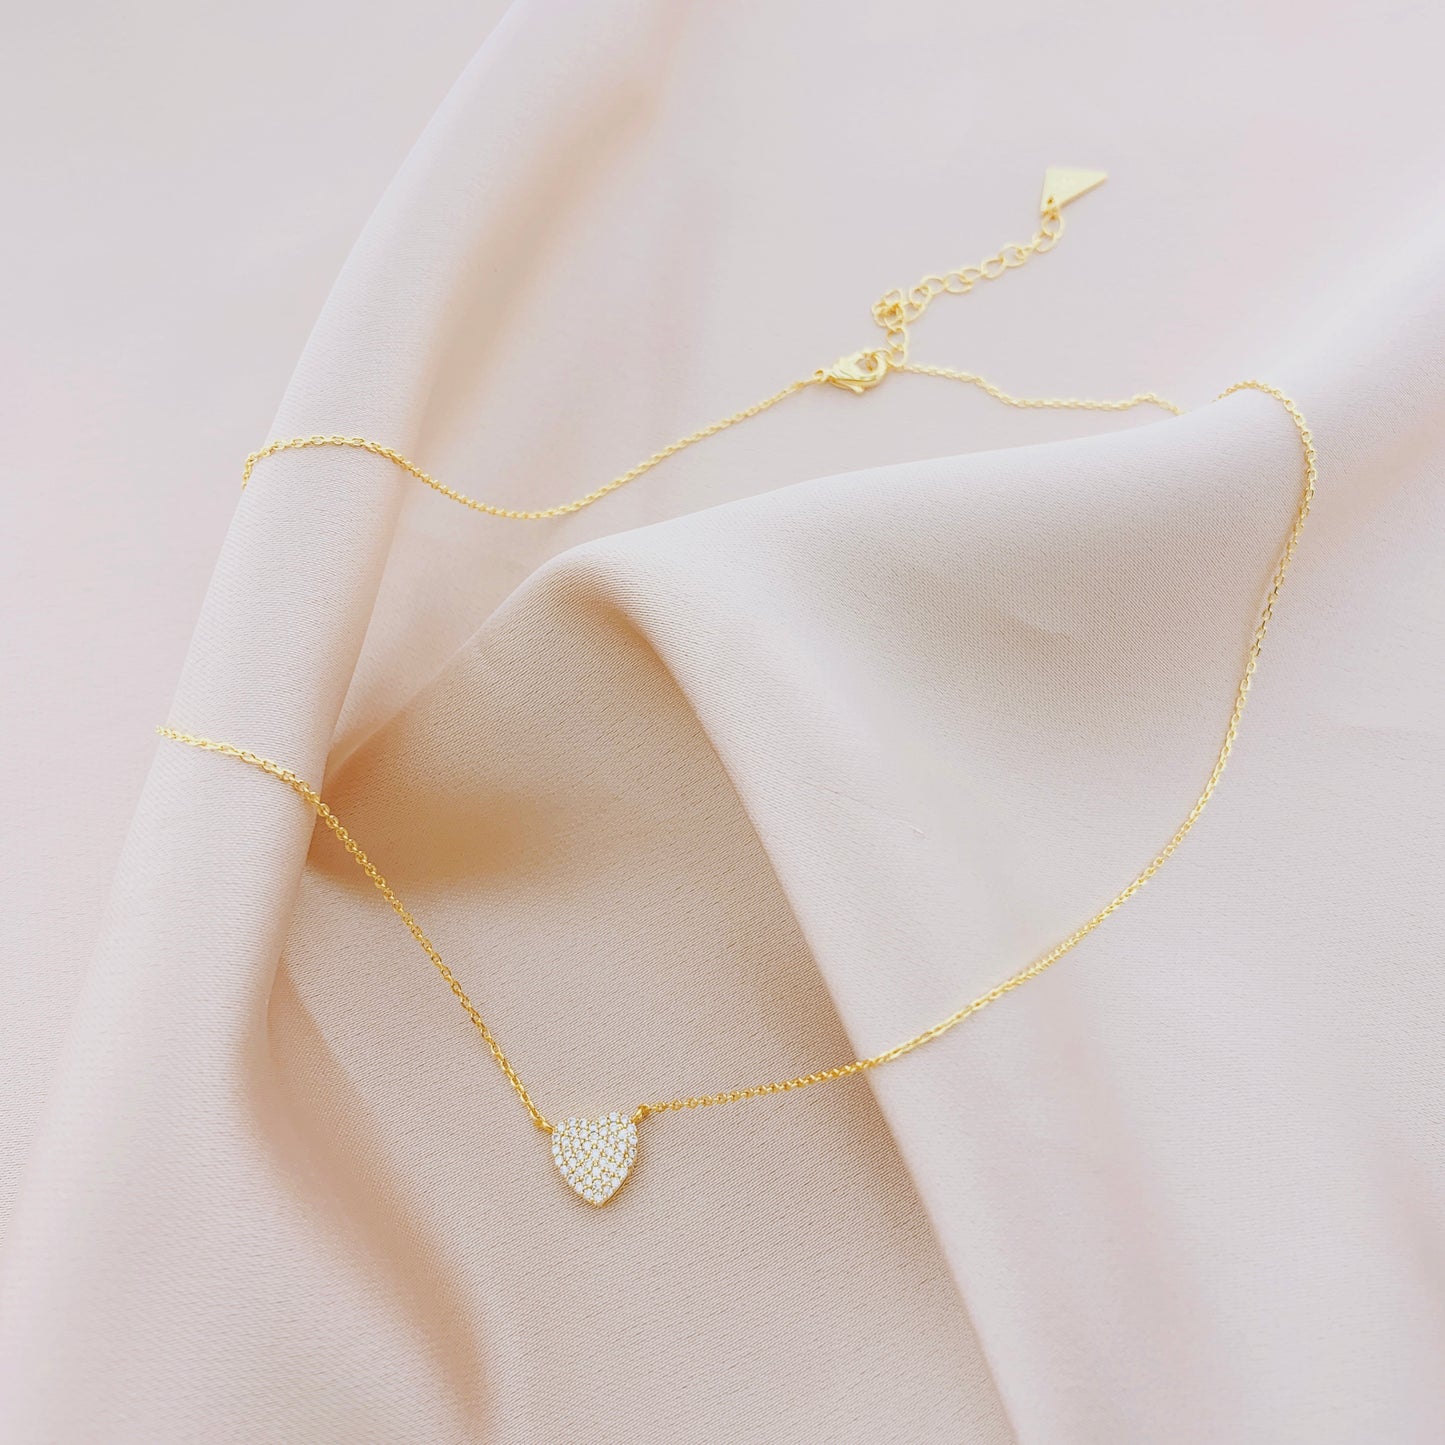 Women's Fashion CZ Heart Pendant Necklace